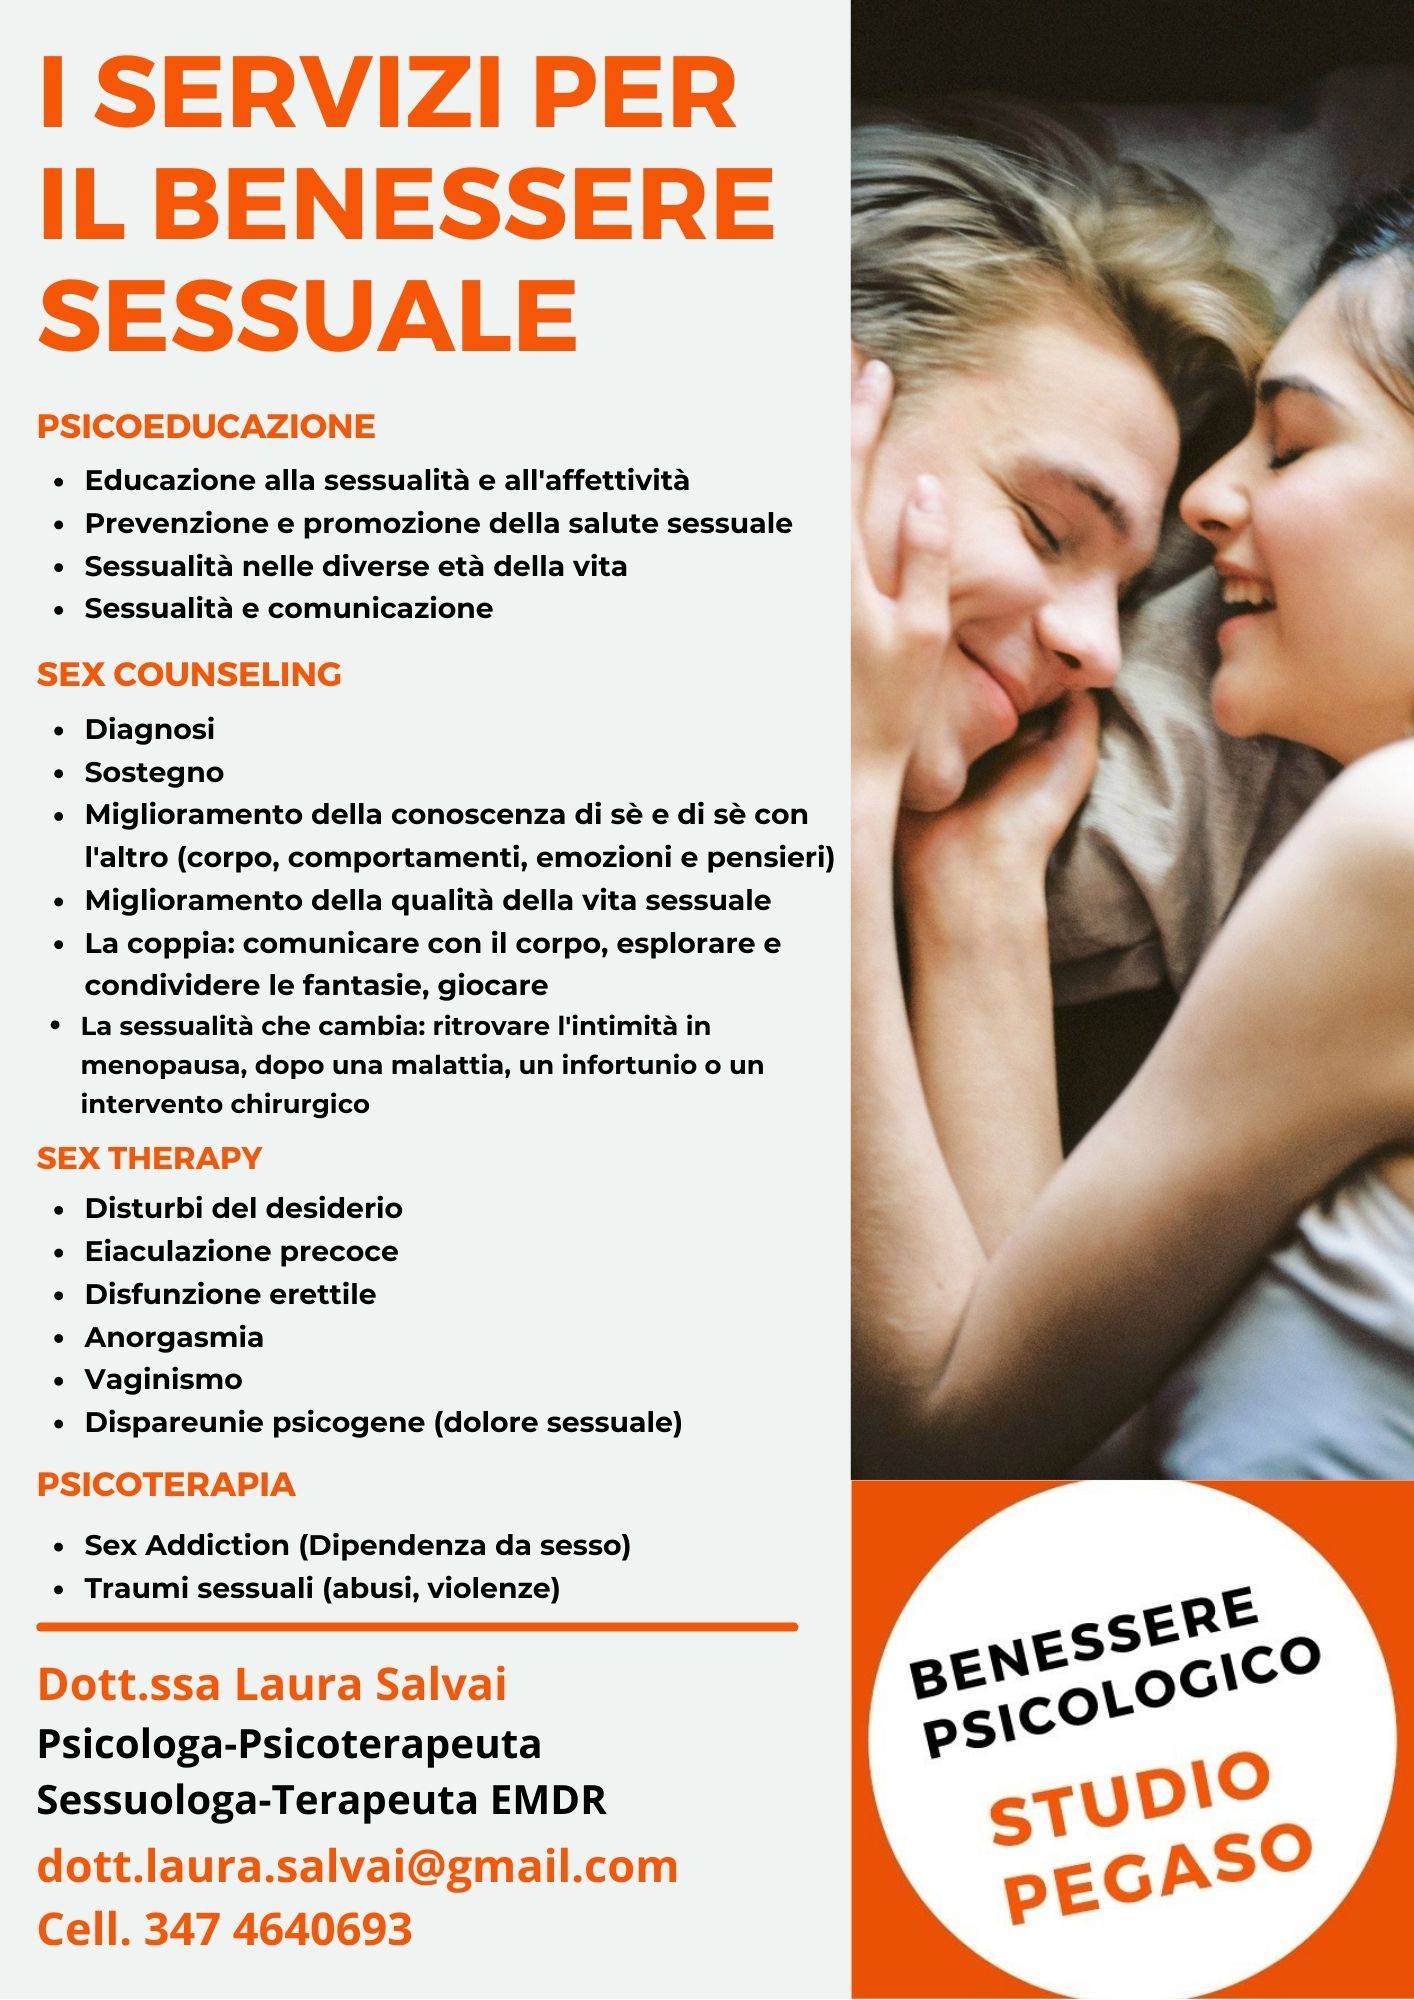 Benessere sessuale Studio Pegaso